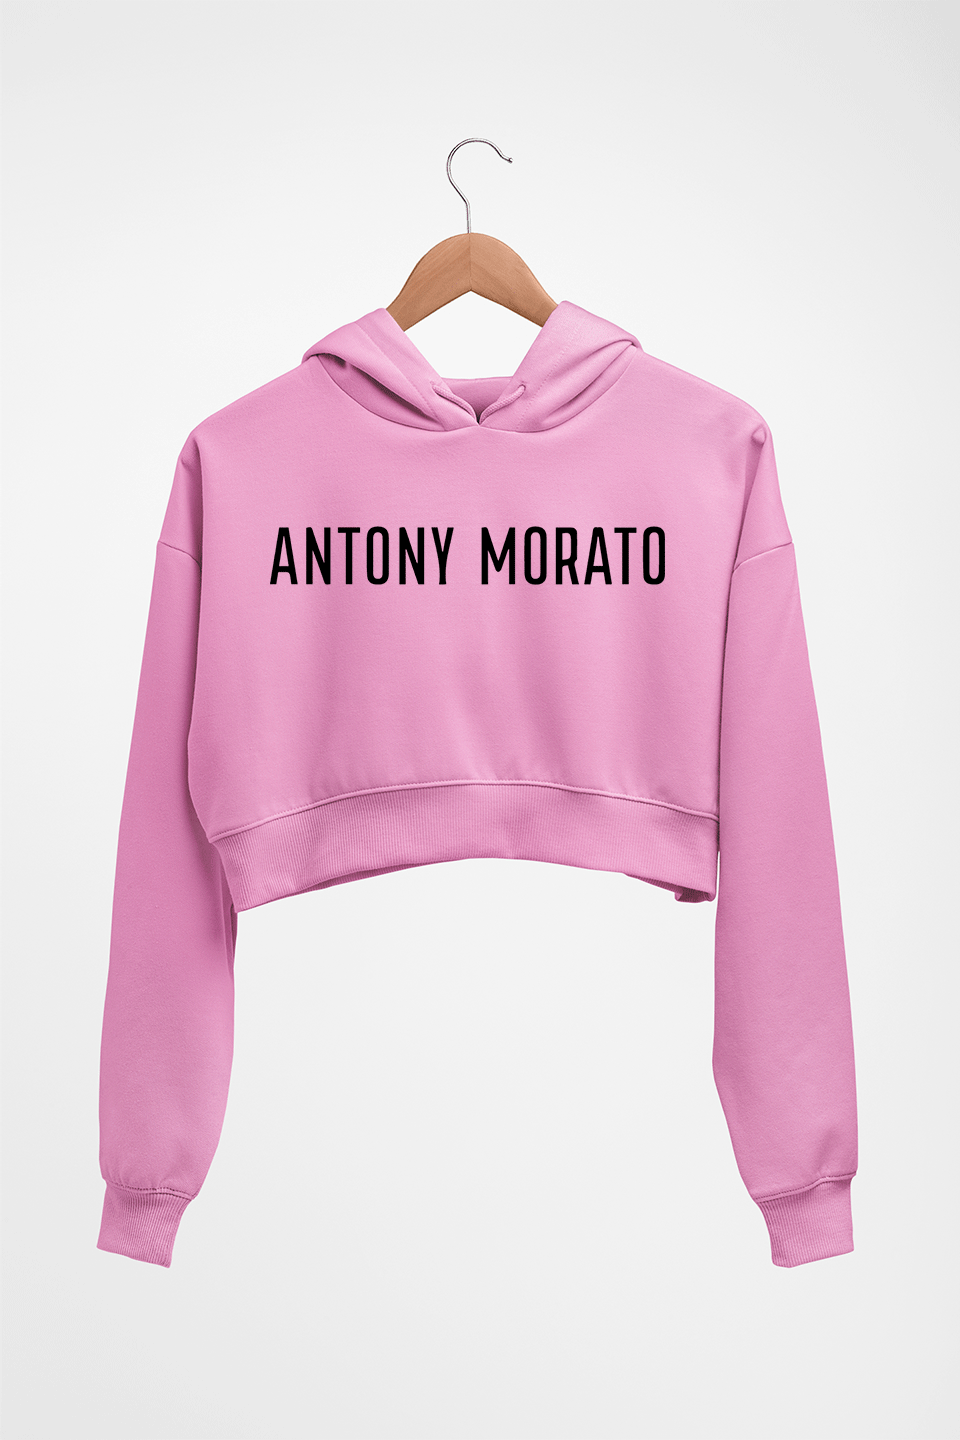 Antony Morato Crop HOODIE FOR WOMEN